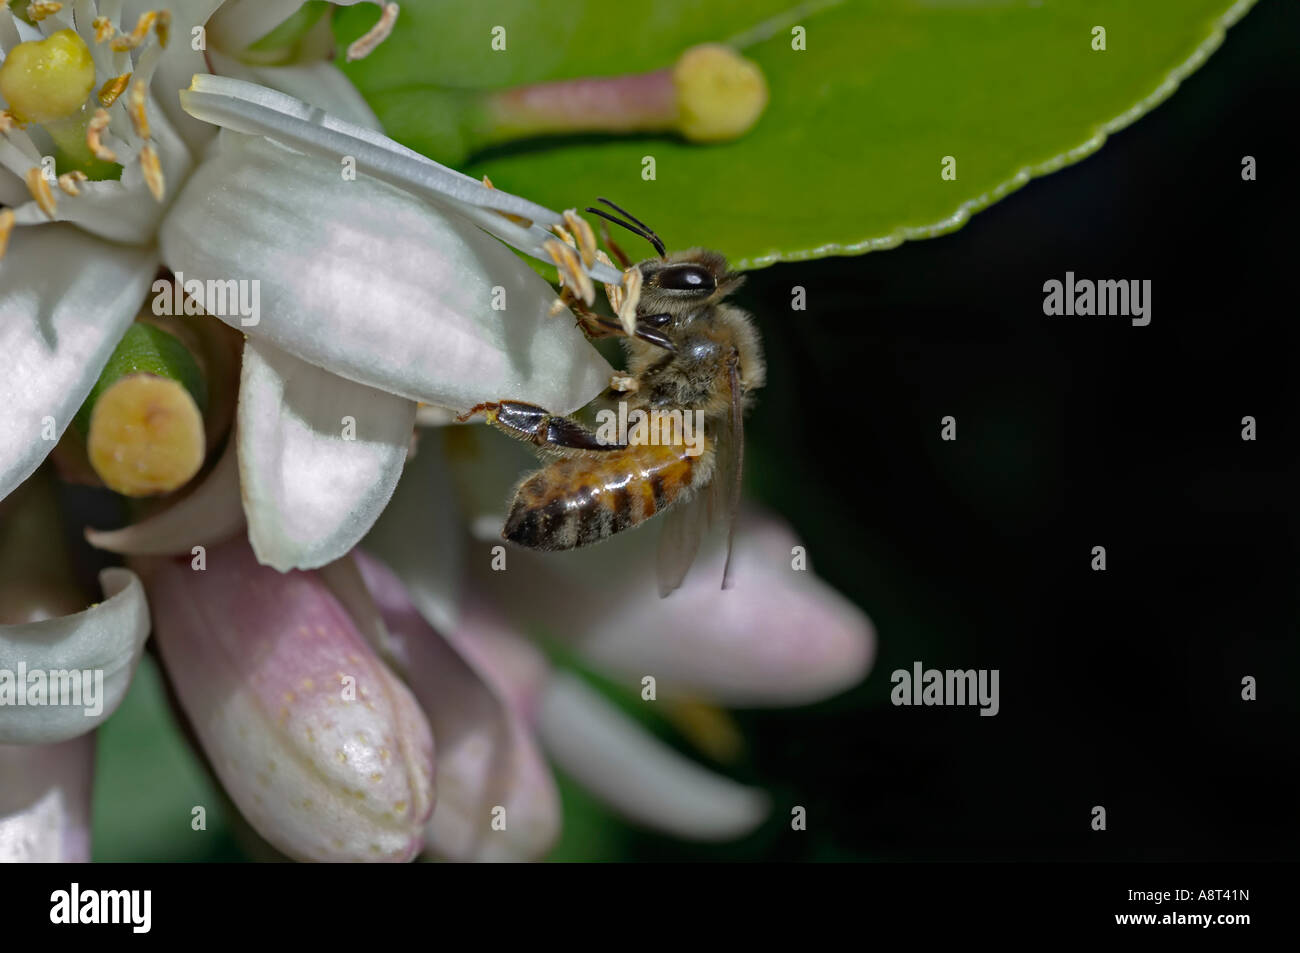 Ou commercial européen d'abeille Miel nectar de lemon tree blossom Océanie Australie Sydney Banque D'Images